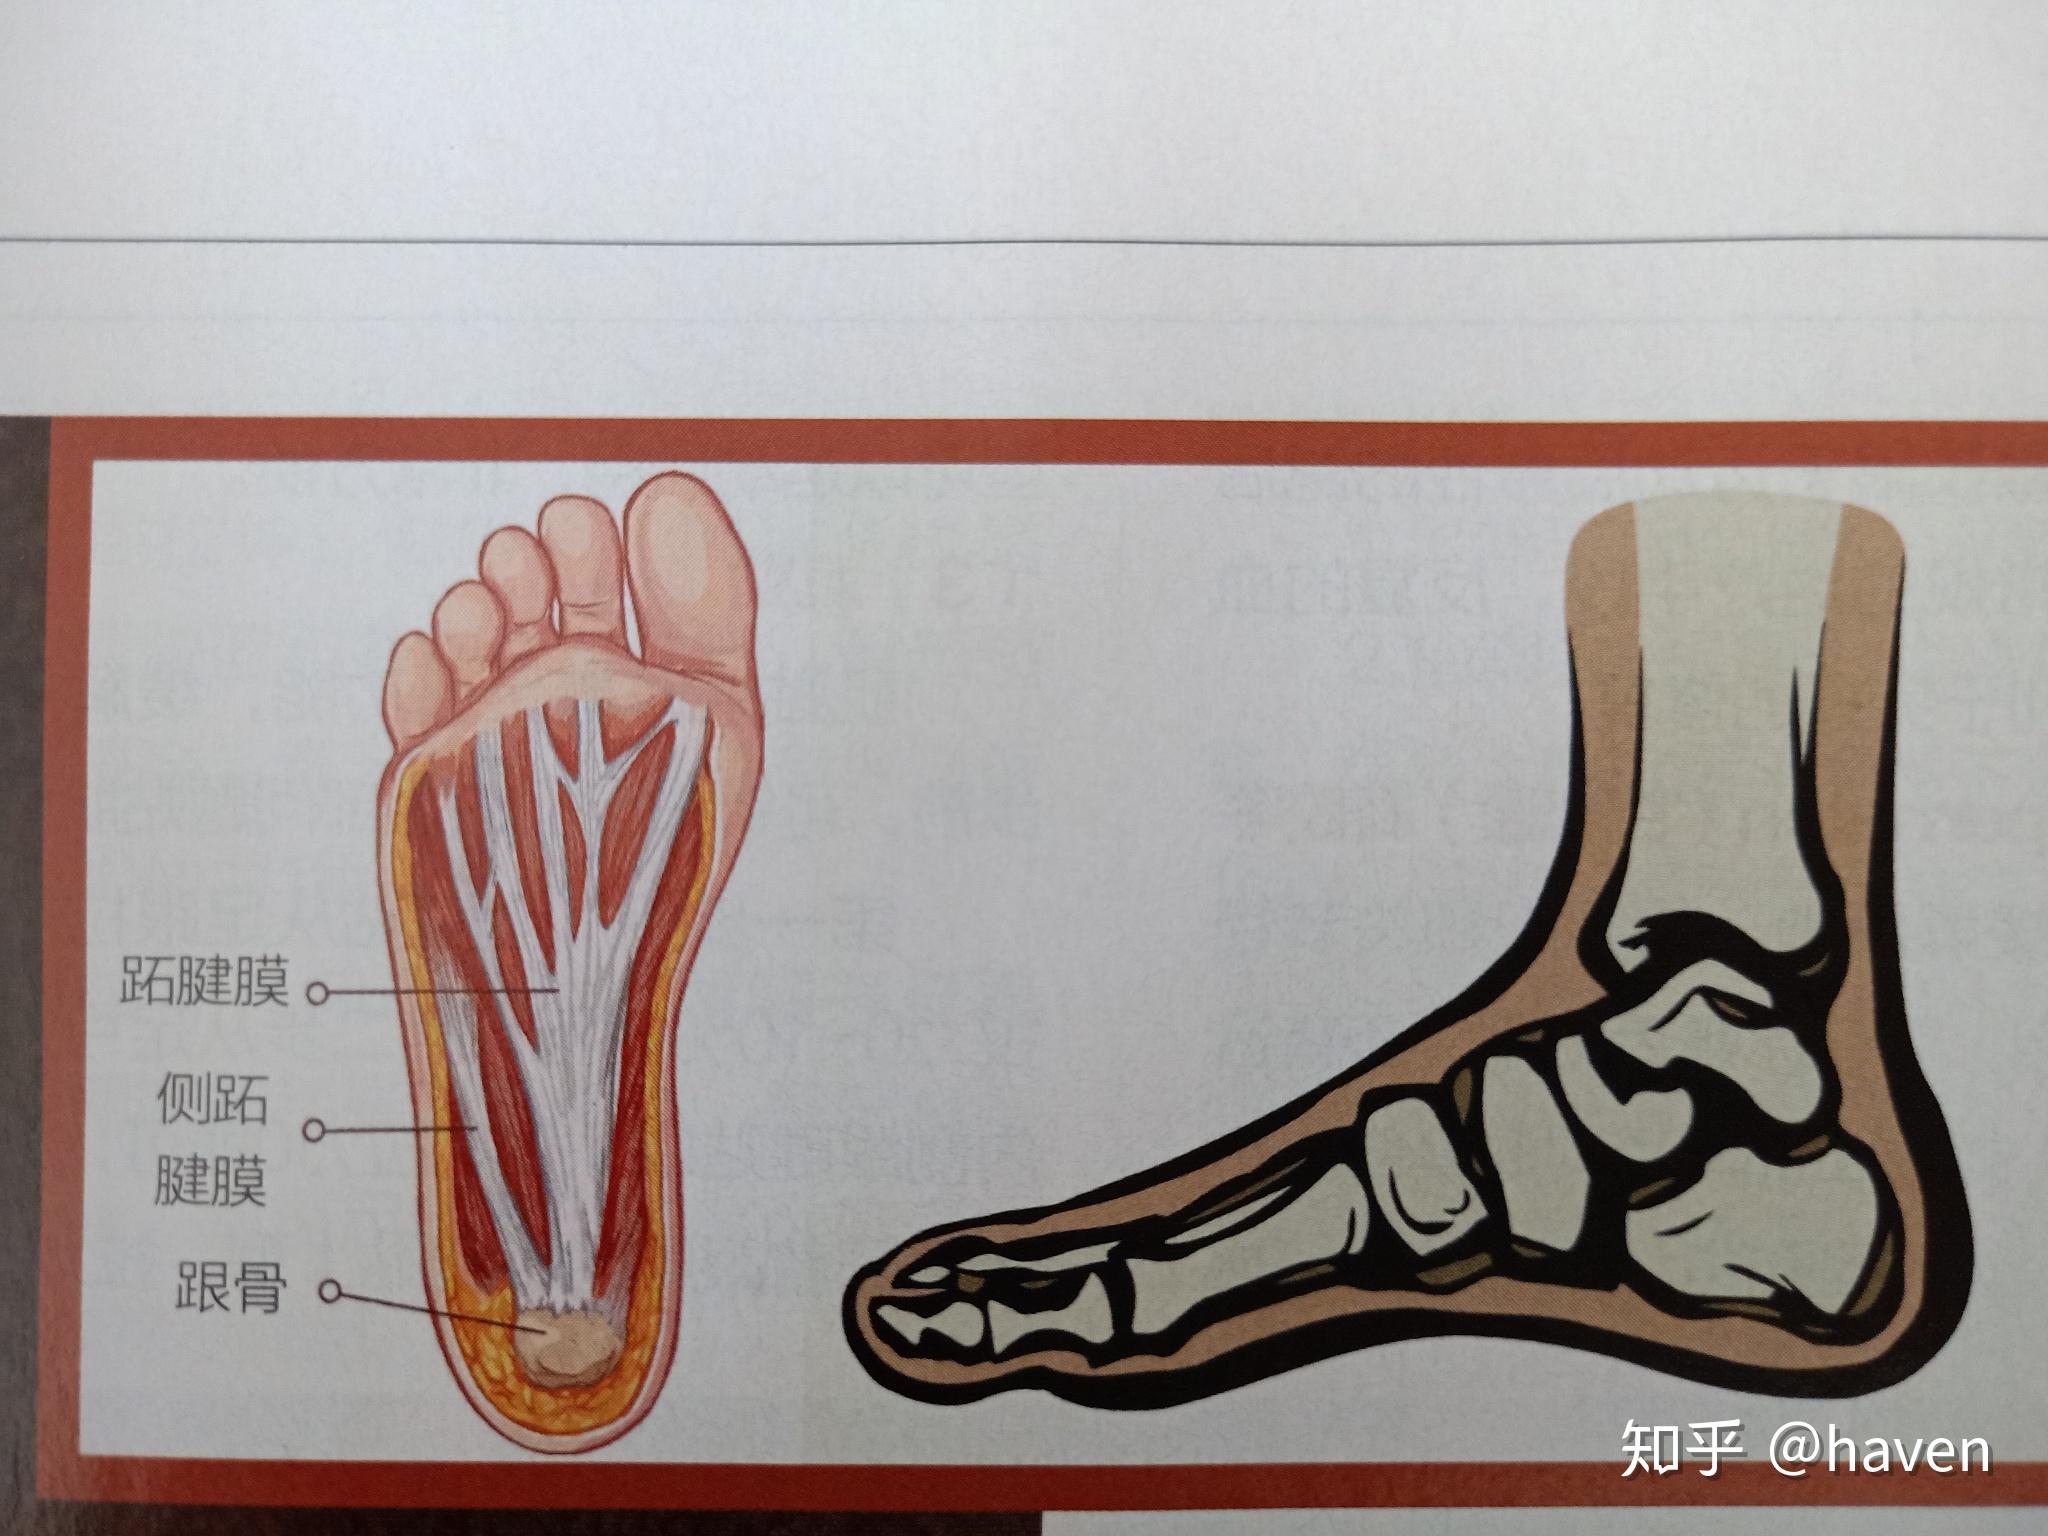 足底筋膜炎是足底肌肉筋膜产生无菌性炎症,引起的足底疼痛